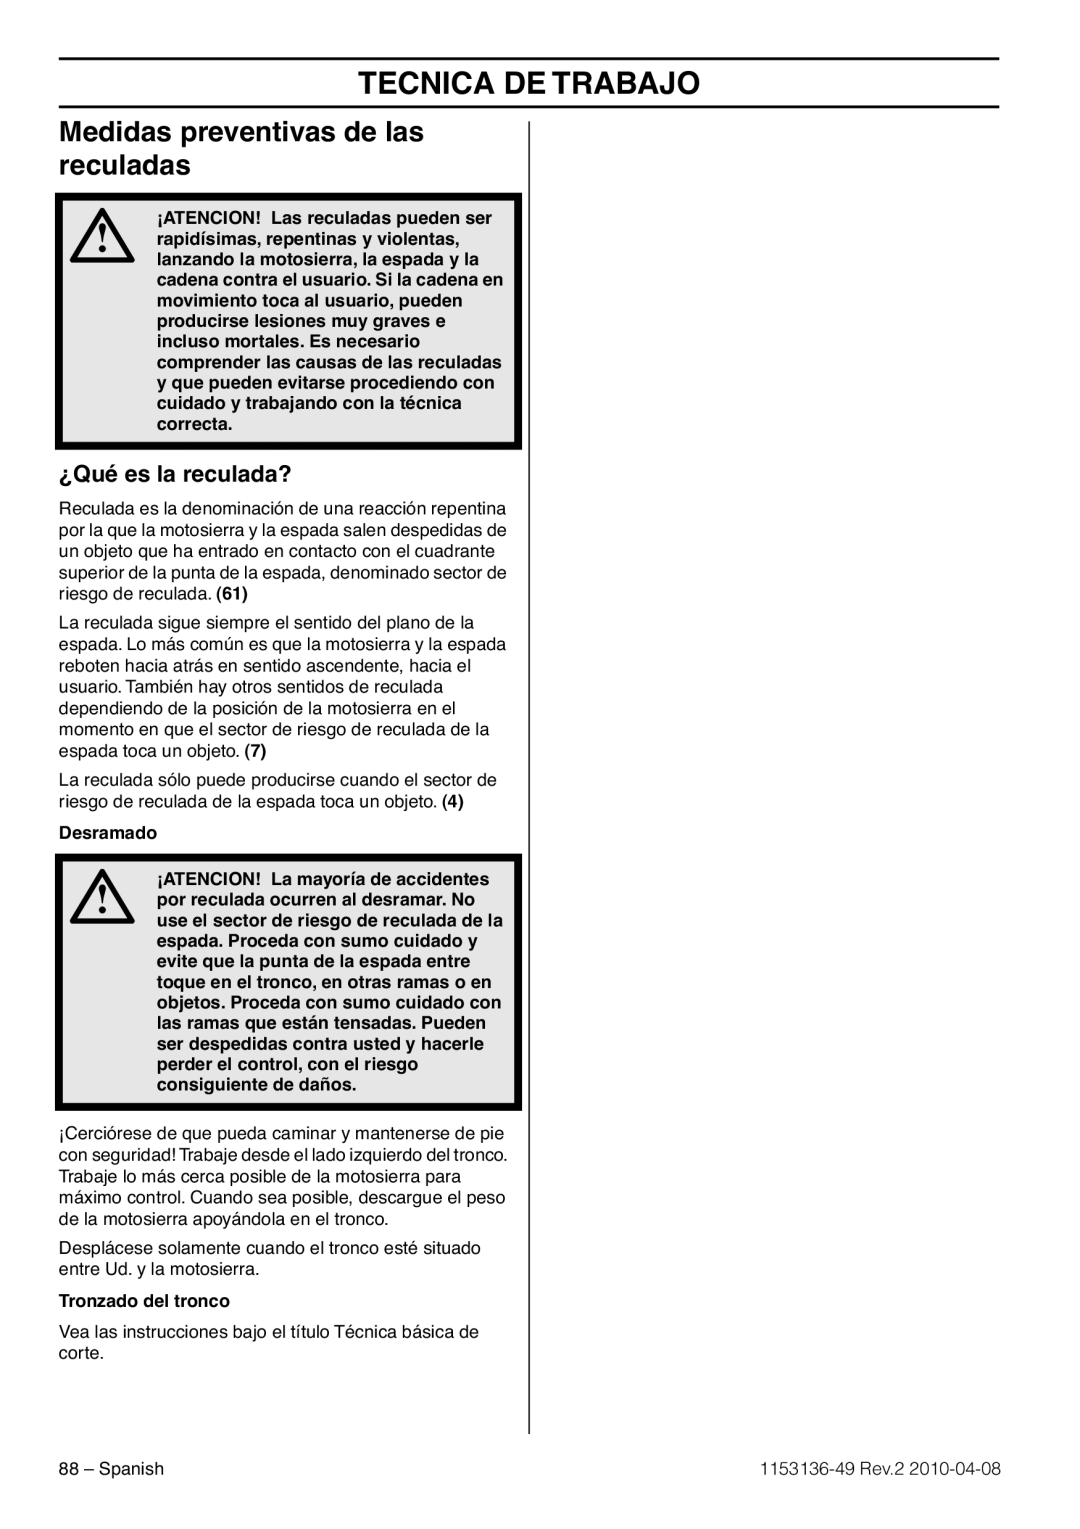 Husqvarna 1153136-49 manuel dutilisation Medidas preventivas de las reculadas, ¿Qué es la reculada?, Tecnica De Trabajo 